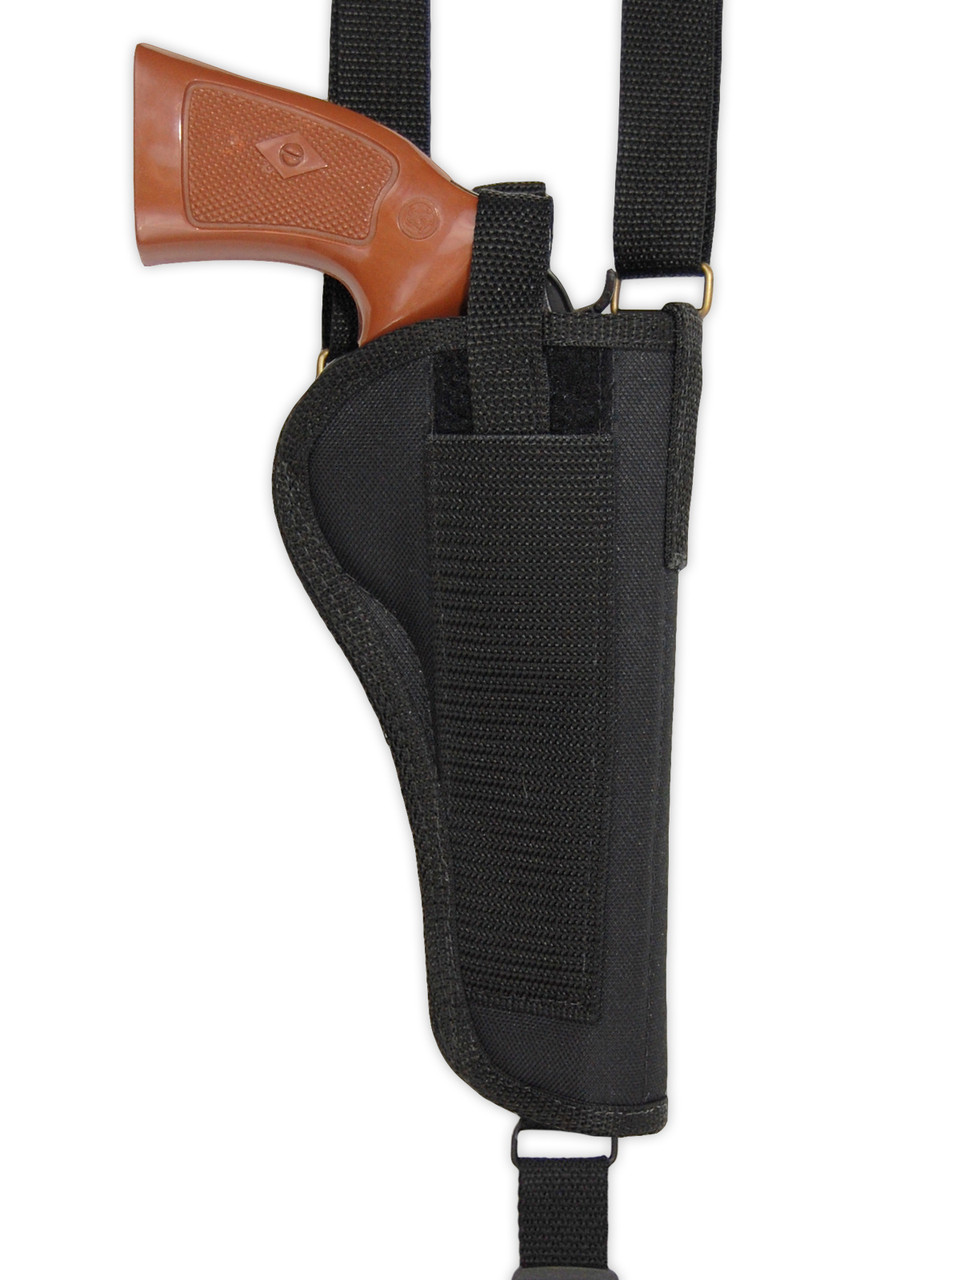 vertical holster for shoulder pad